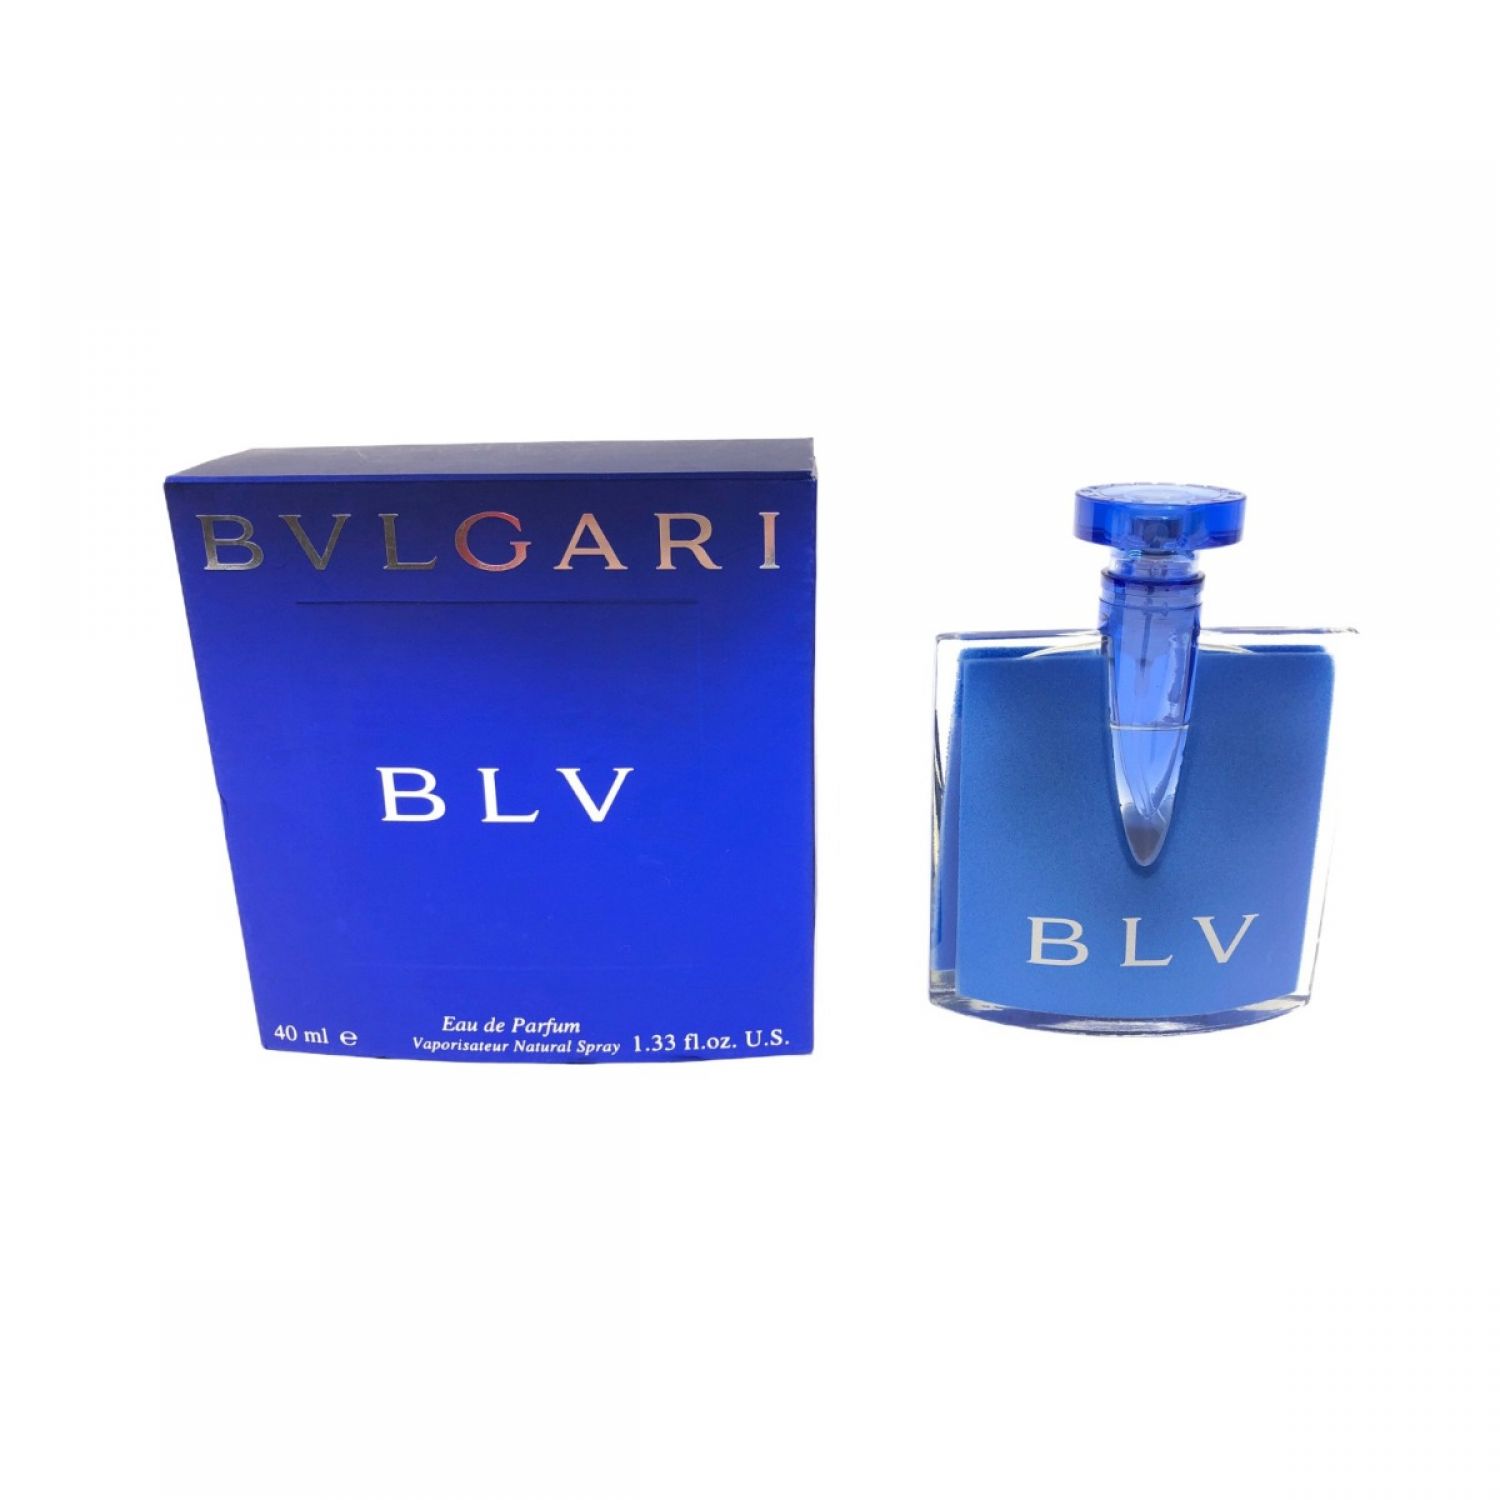 ブルガリBVLGARI ブルー 40ml - 香水(ユニセックス)